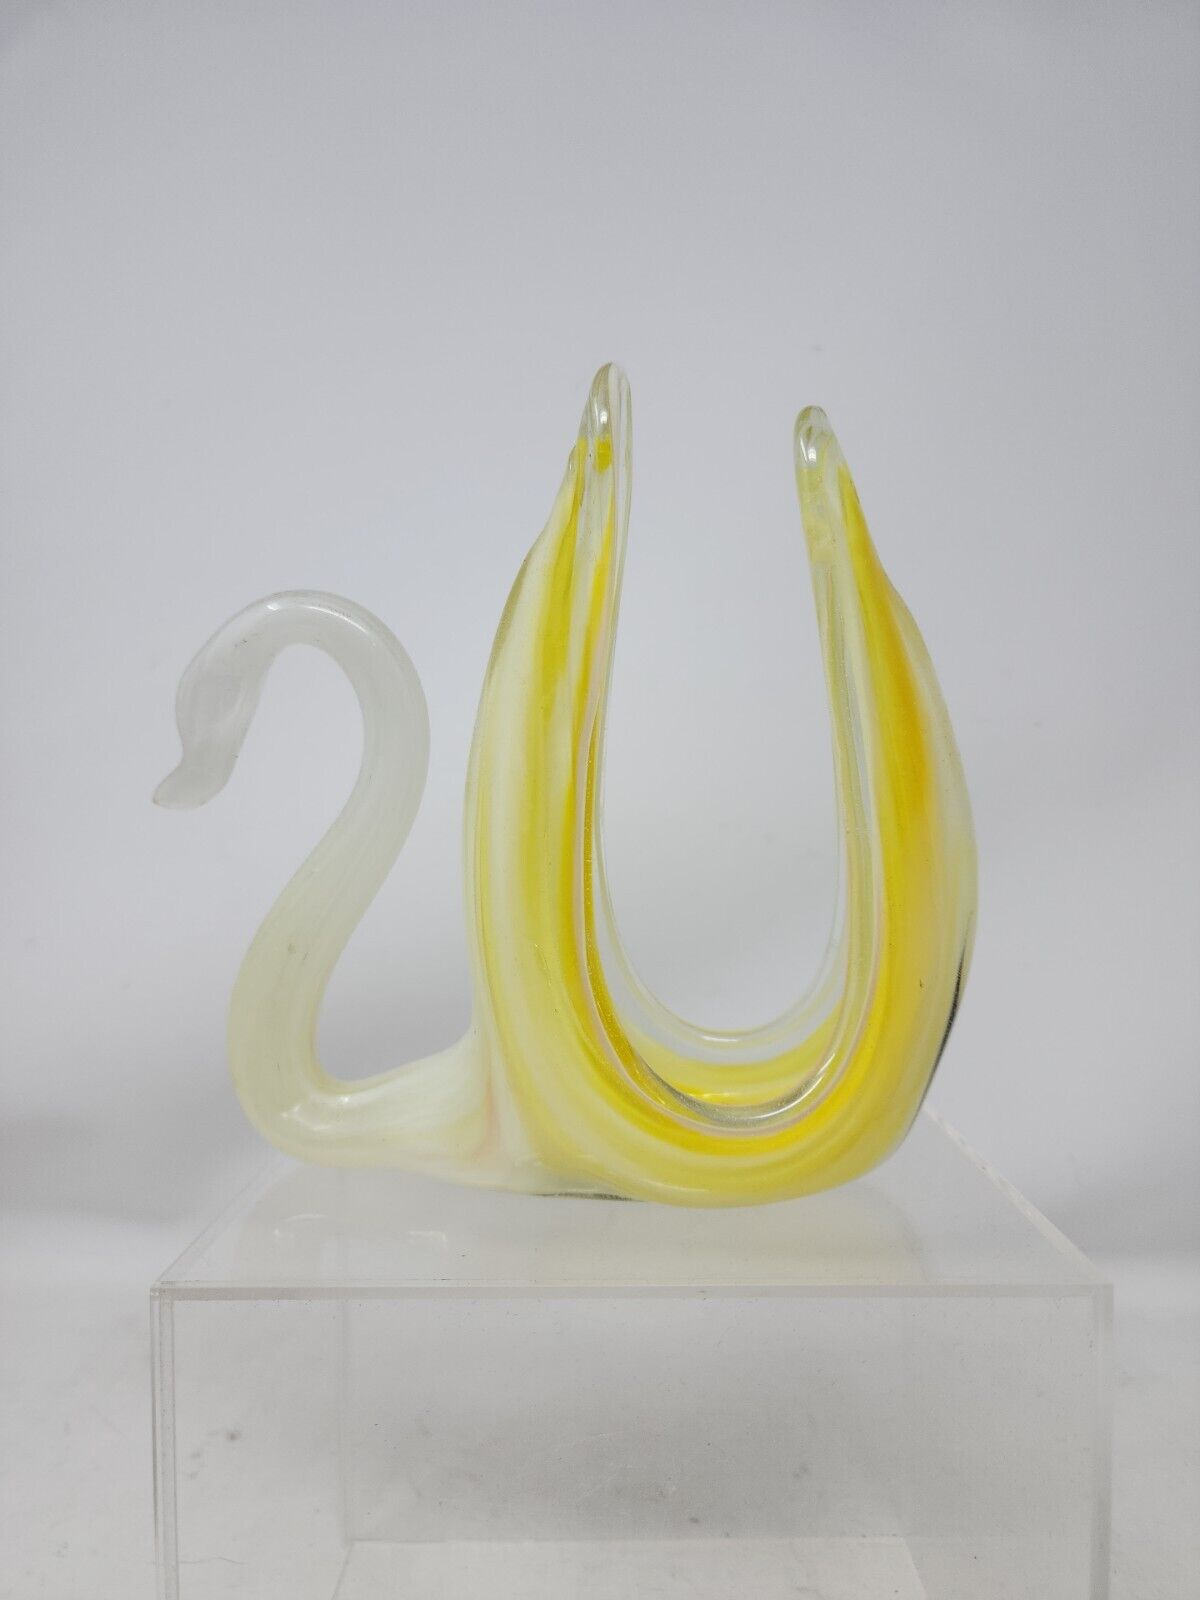 Vintage MCM Swung Art Blown Glass Swan Napkin Holder Letter Holder Yellow/White